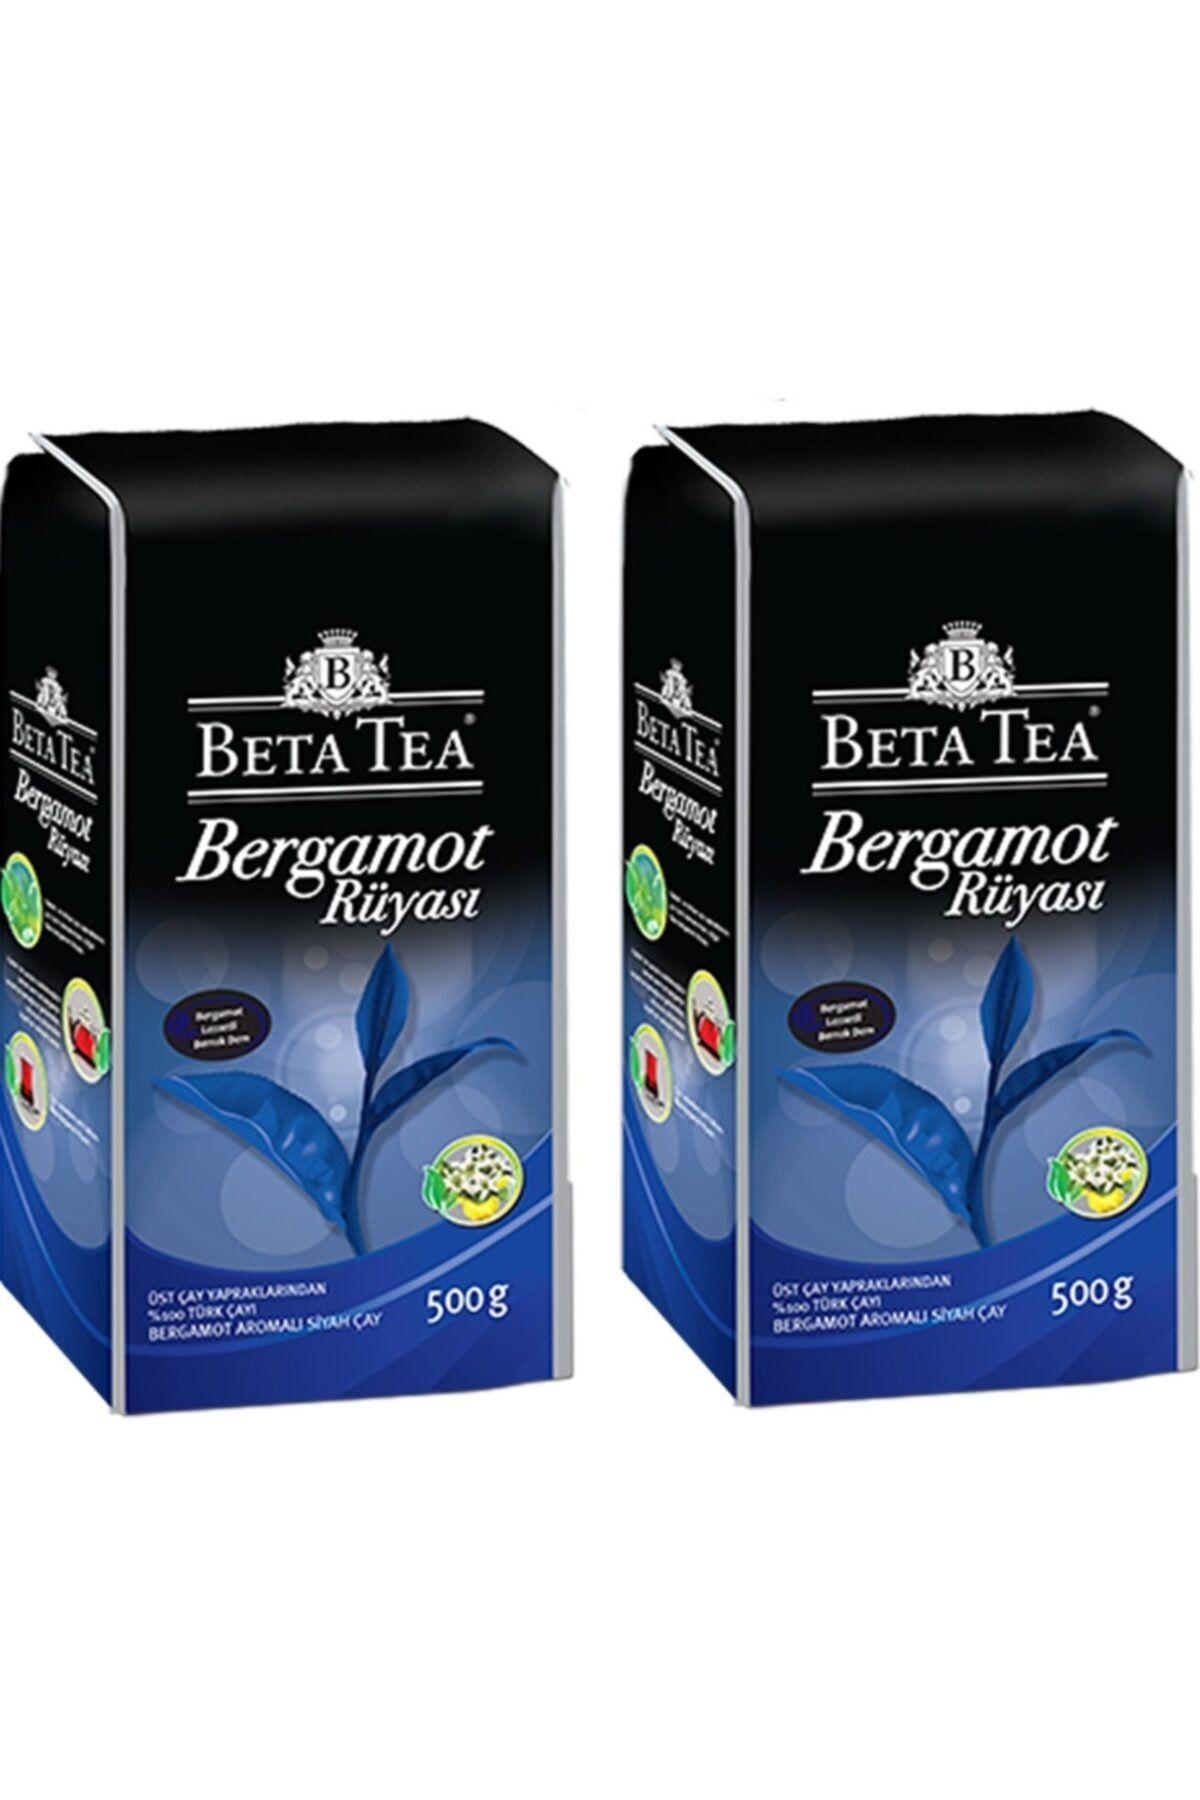 Beta Tea Bergamot Rüyası (500gr) * 2 Adet (1kg)